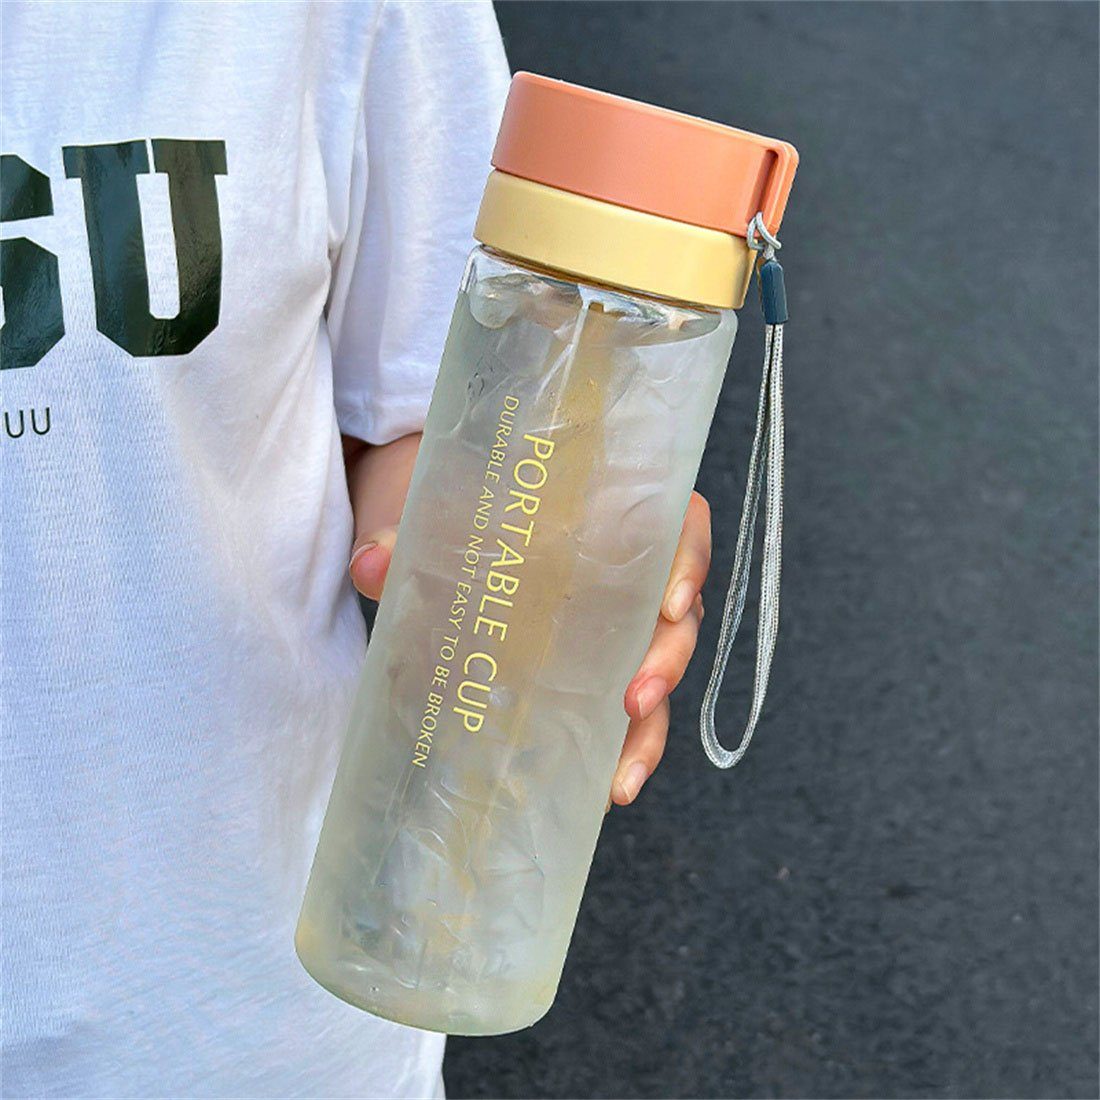 tragbarer DÖRÖY Sommer-Sport-Wasserflasche, Outdoor-Wasserbecher 800ml orange Trinkflasche